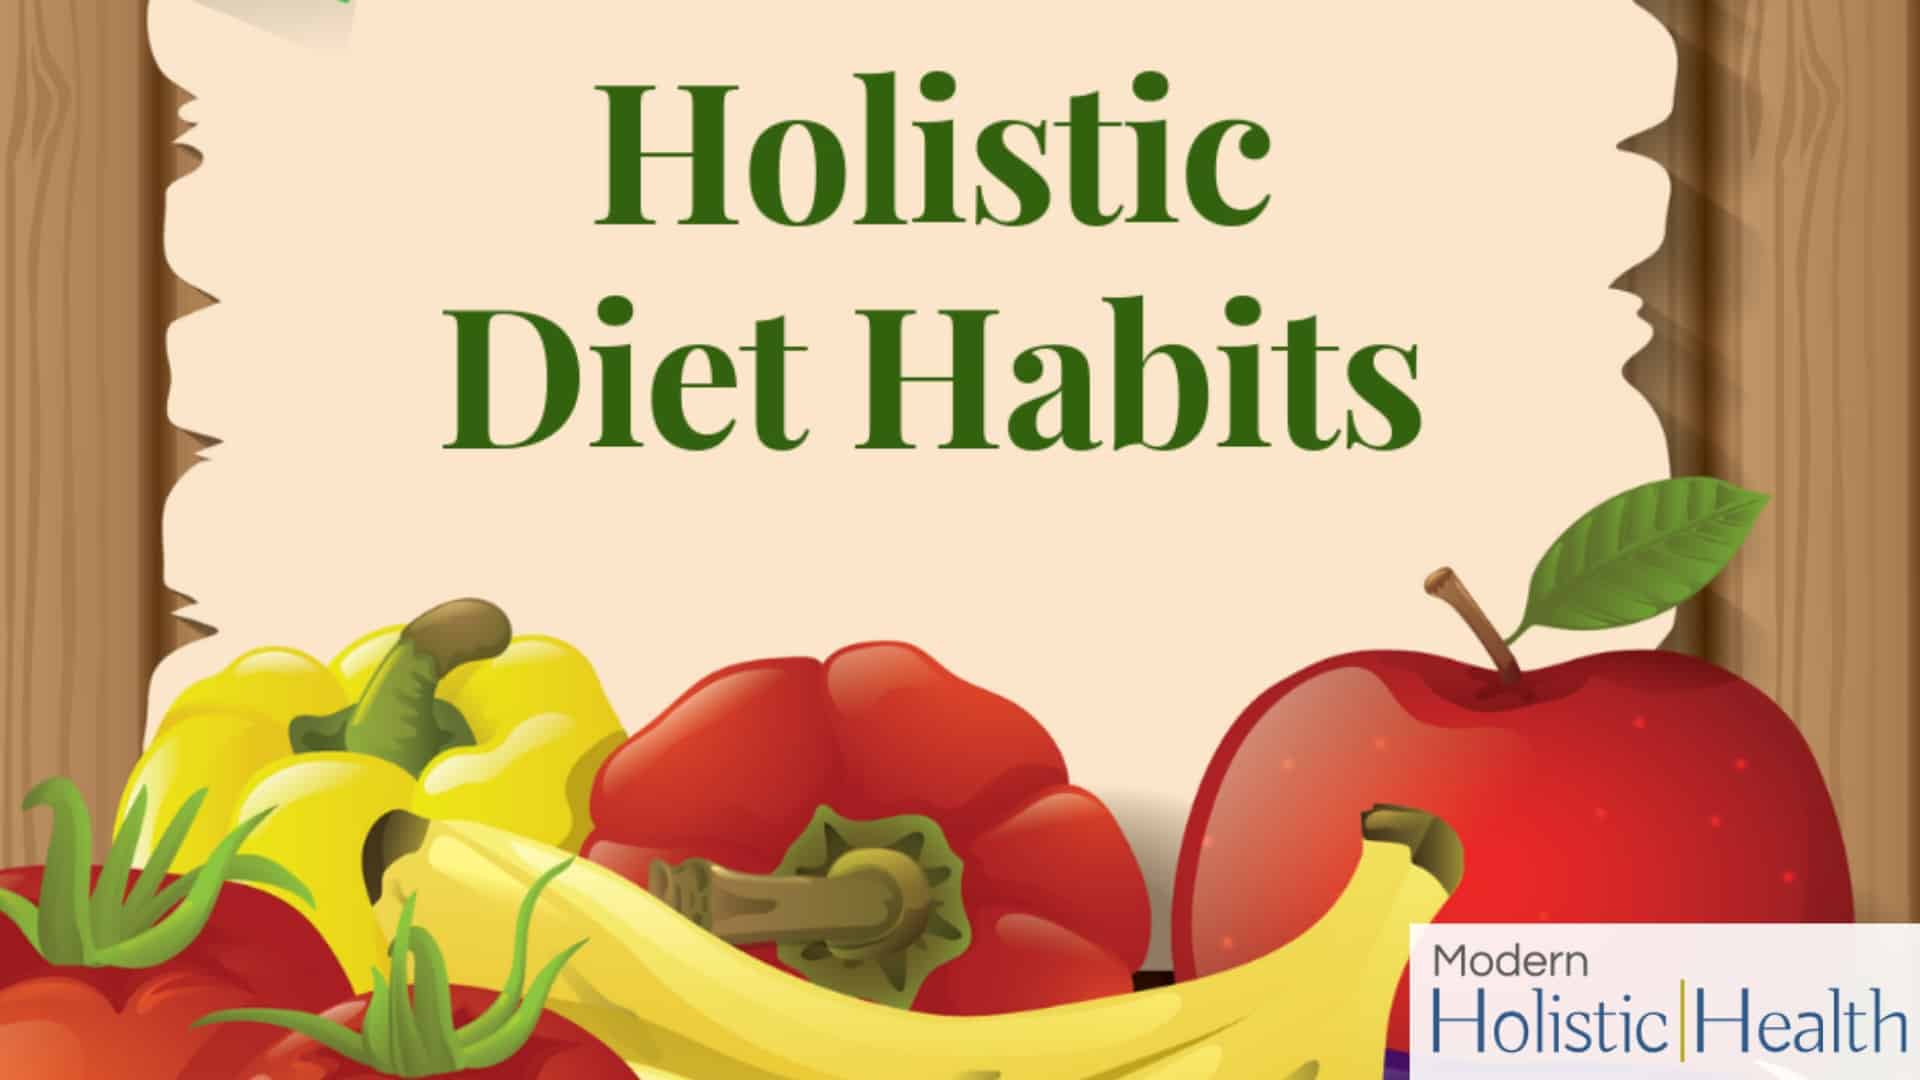 Holistic Diet Habits